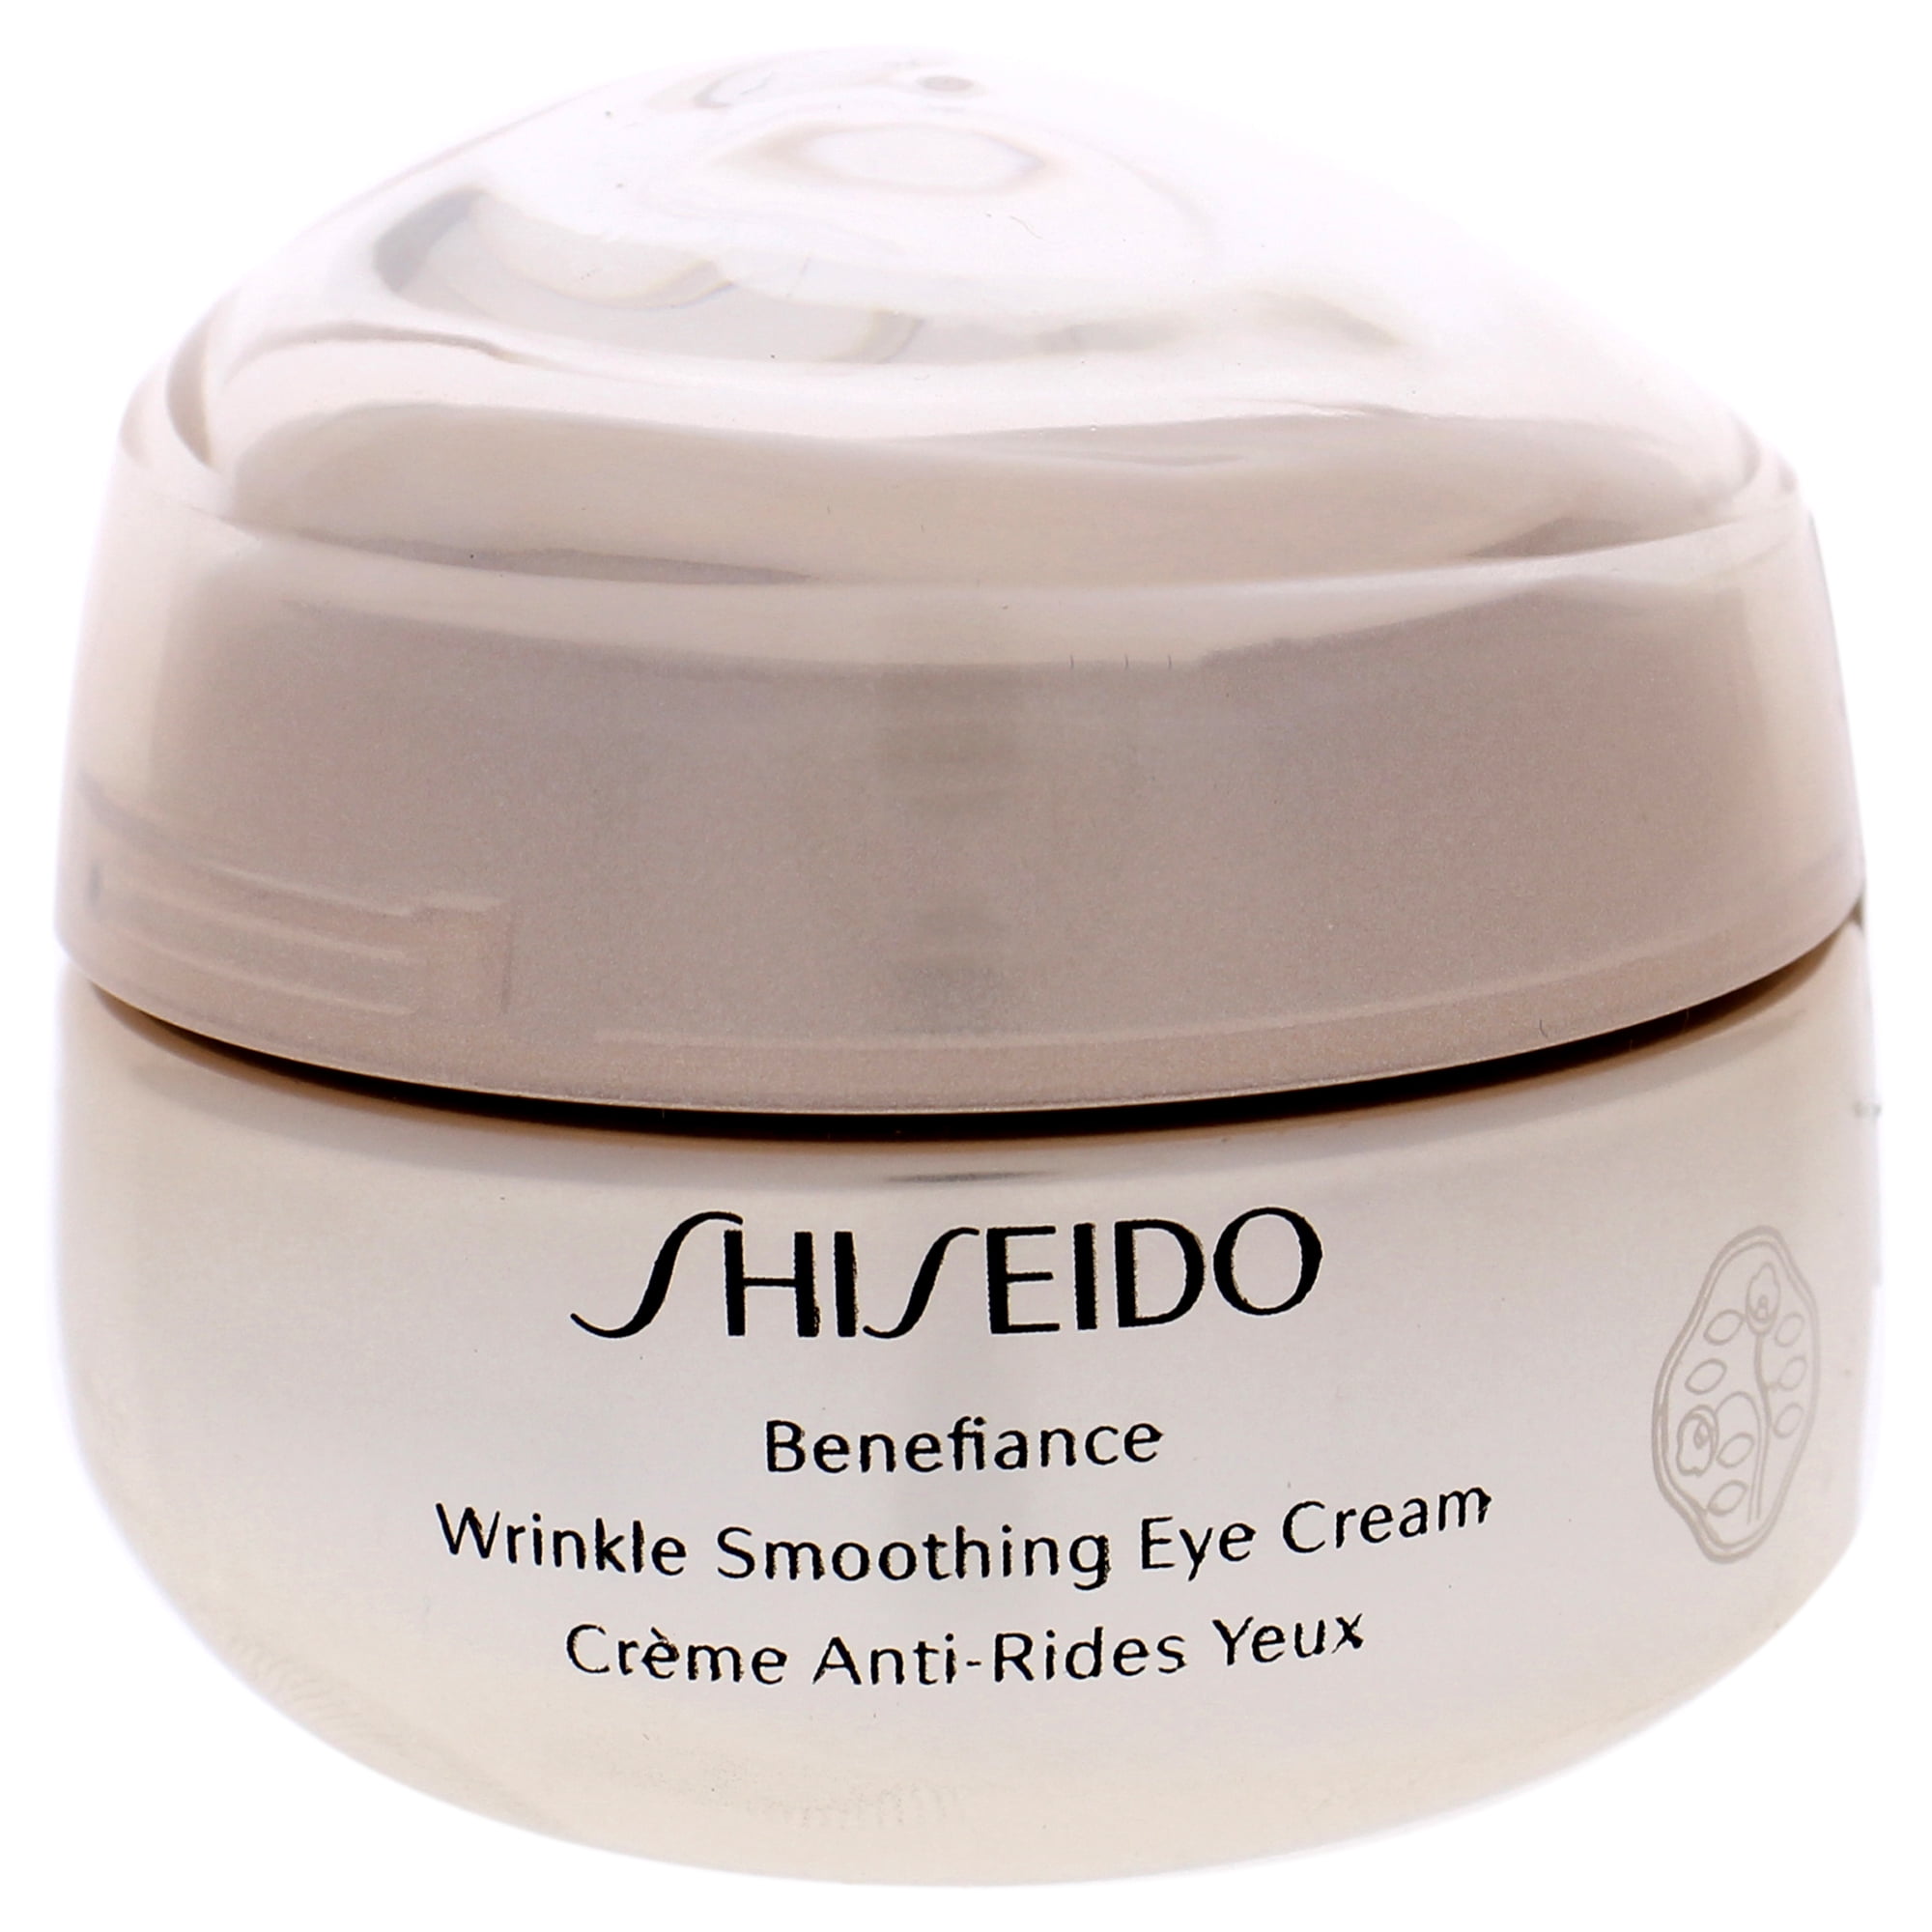 Shiseido wrinkle smoothing. Shiseido Benefiance Eye Cream. Shiseido // крем Benefiance Wrinkle Smoothing Eye Cream 15ml. Shiseido Wrinkle Smoothing Cream. Корейский косметика Eye Cream Byaning.